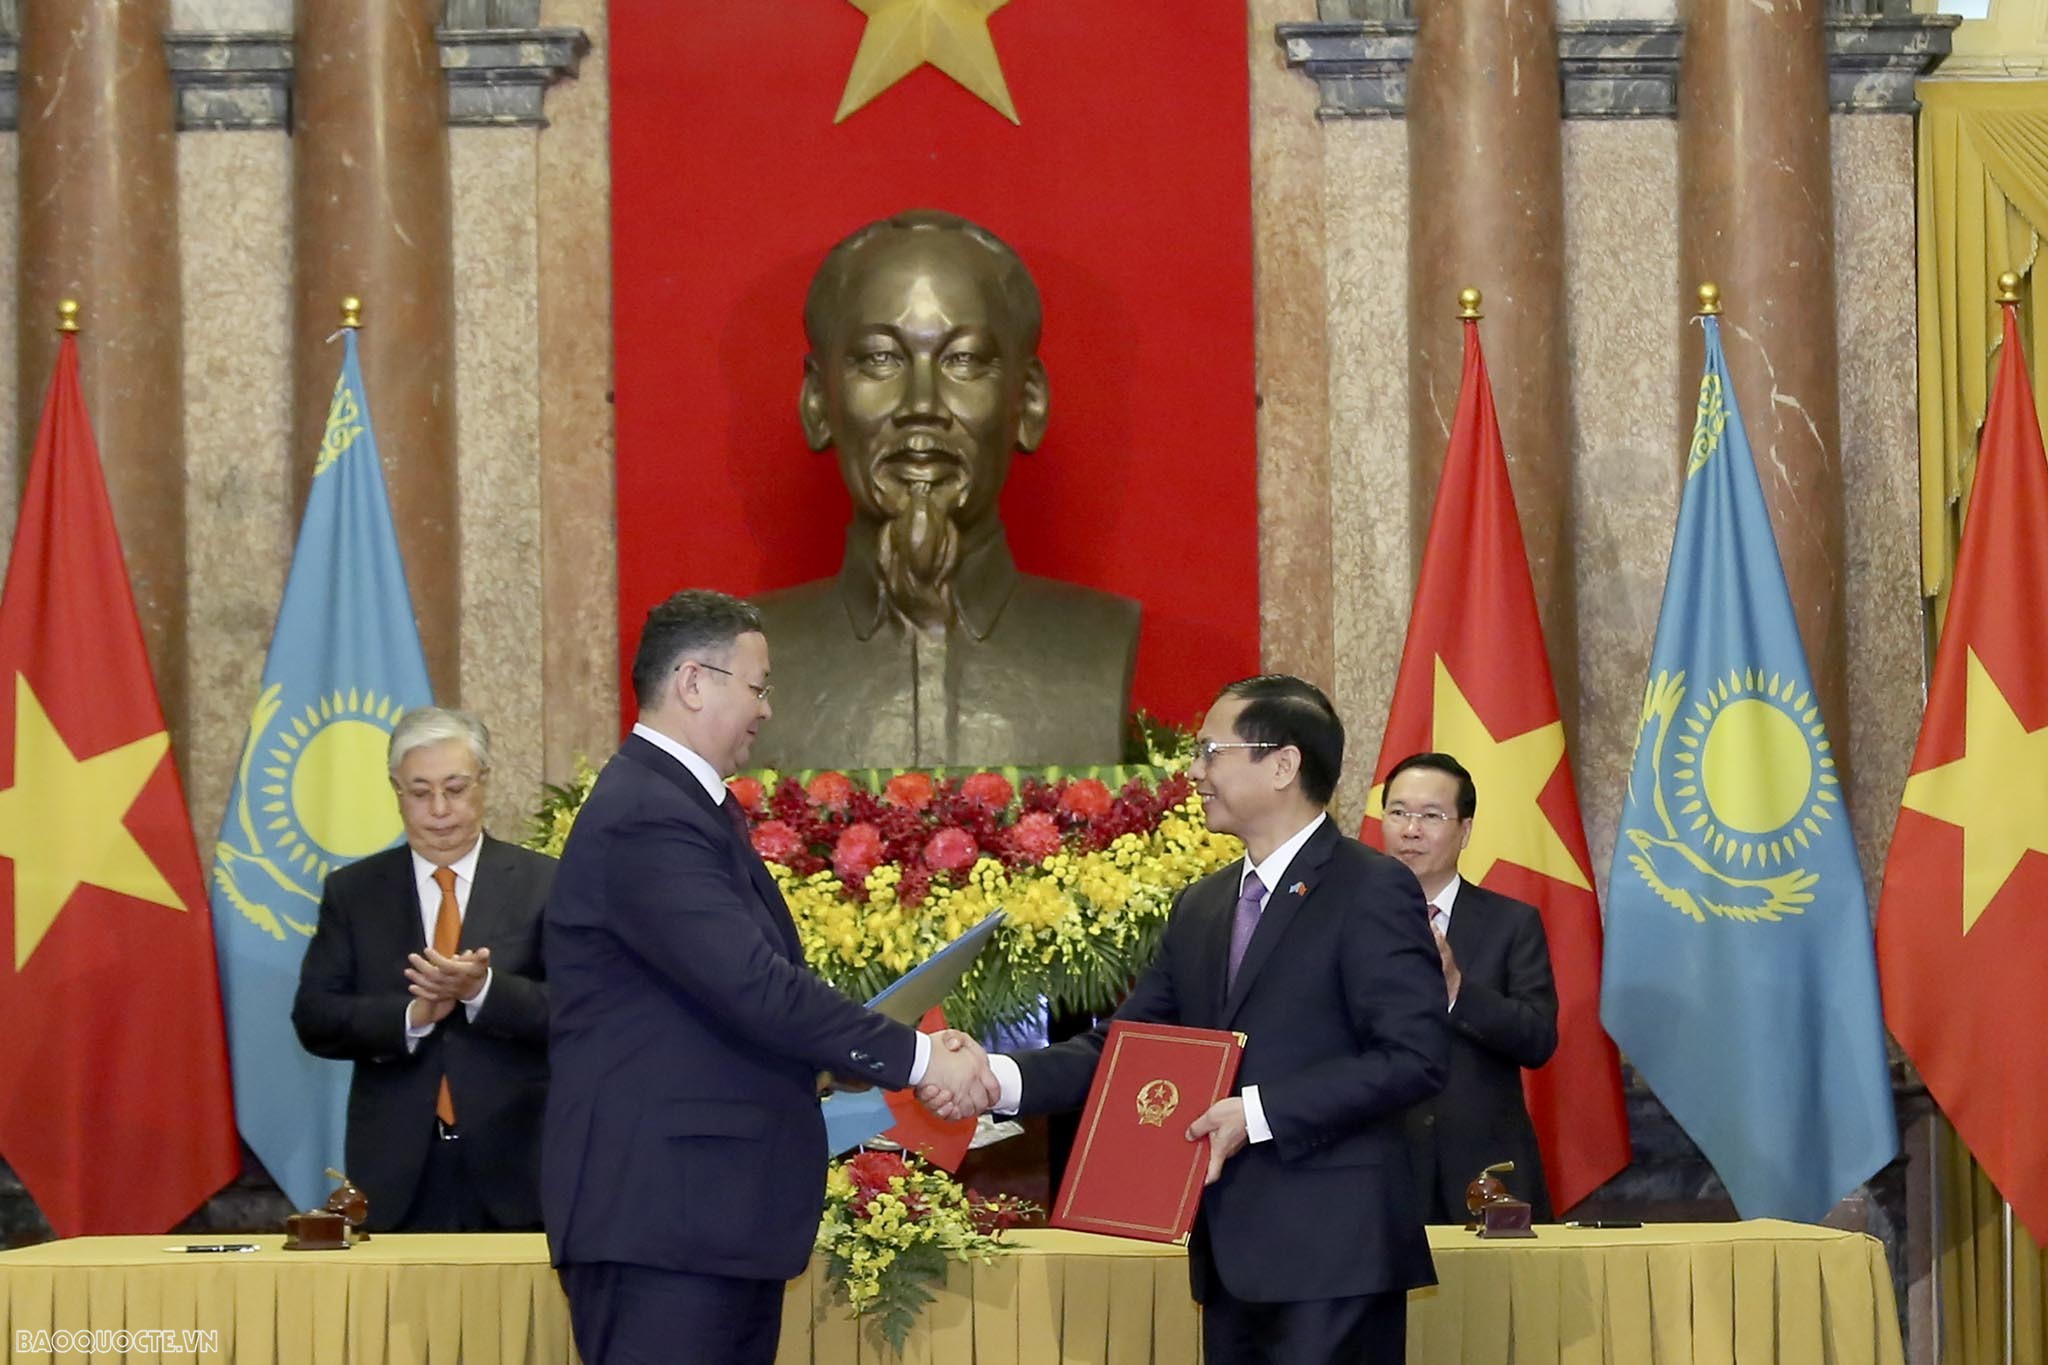 Bộ trưởng Bộ Ngoại giao Bùi Thanh Sơn ký kết hiệp định giữa Việt Nam và Kazakhstan về miễn thị thực cho người mang hộ chiếu phổ thông.